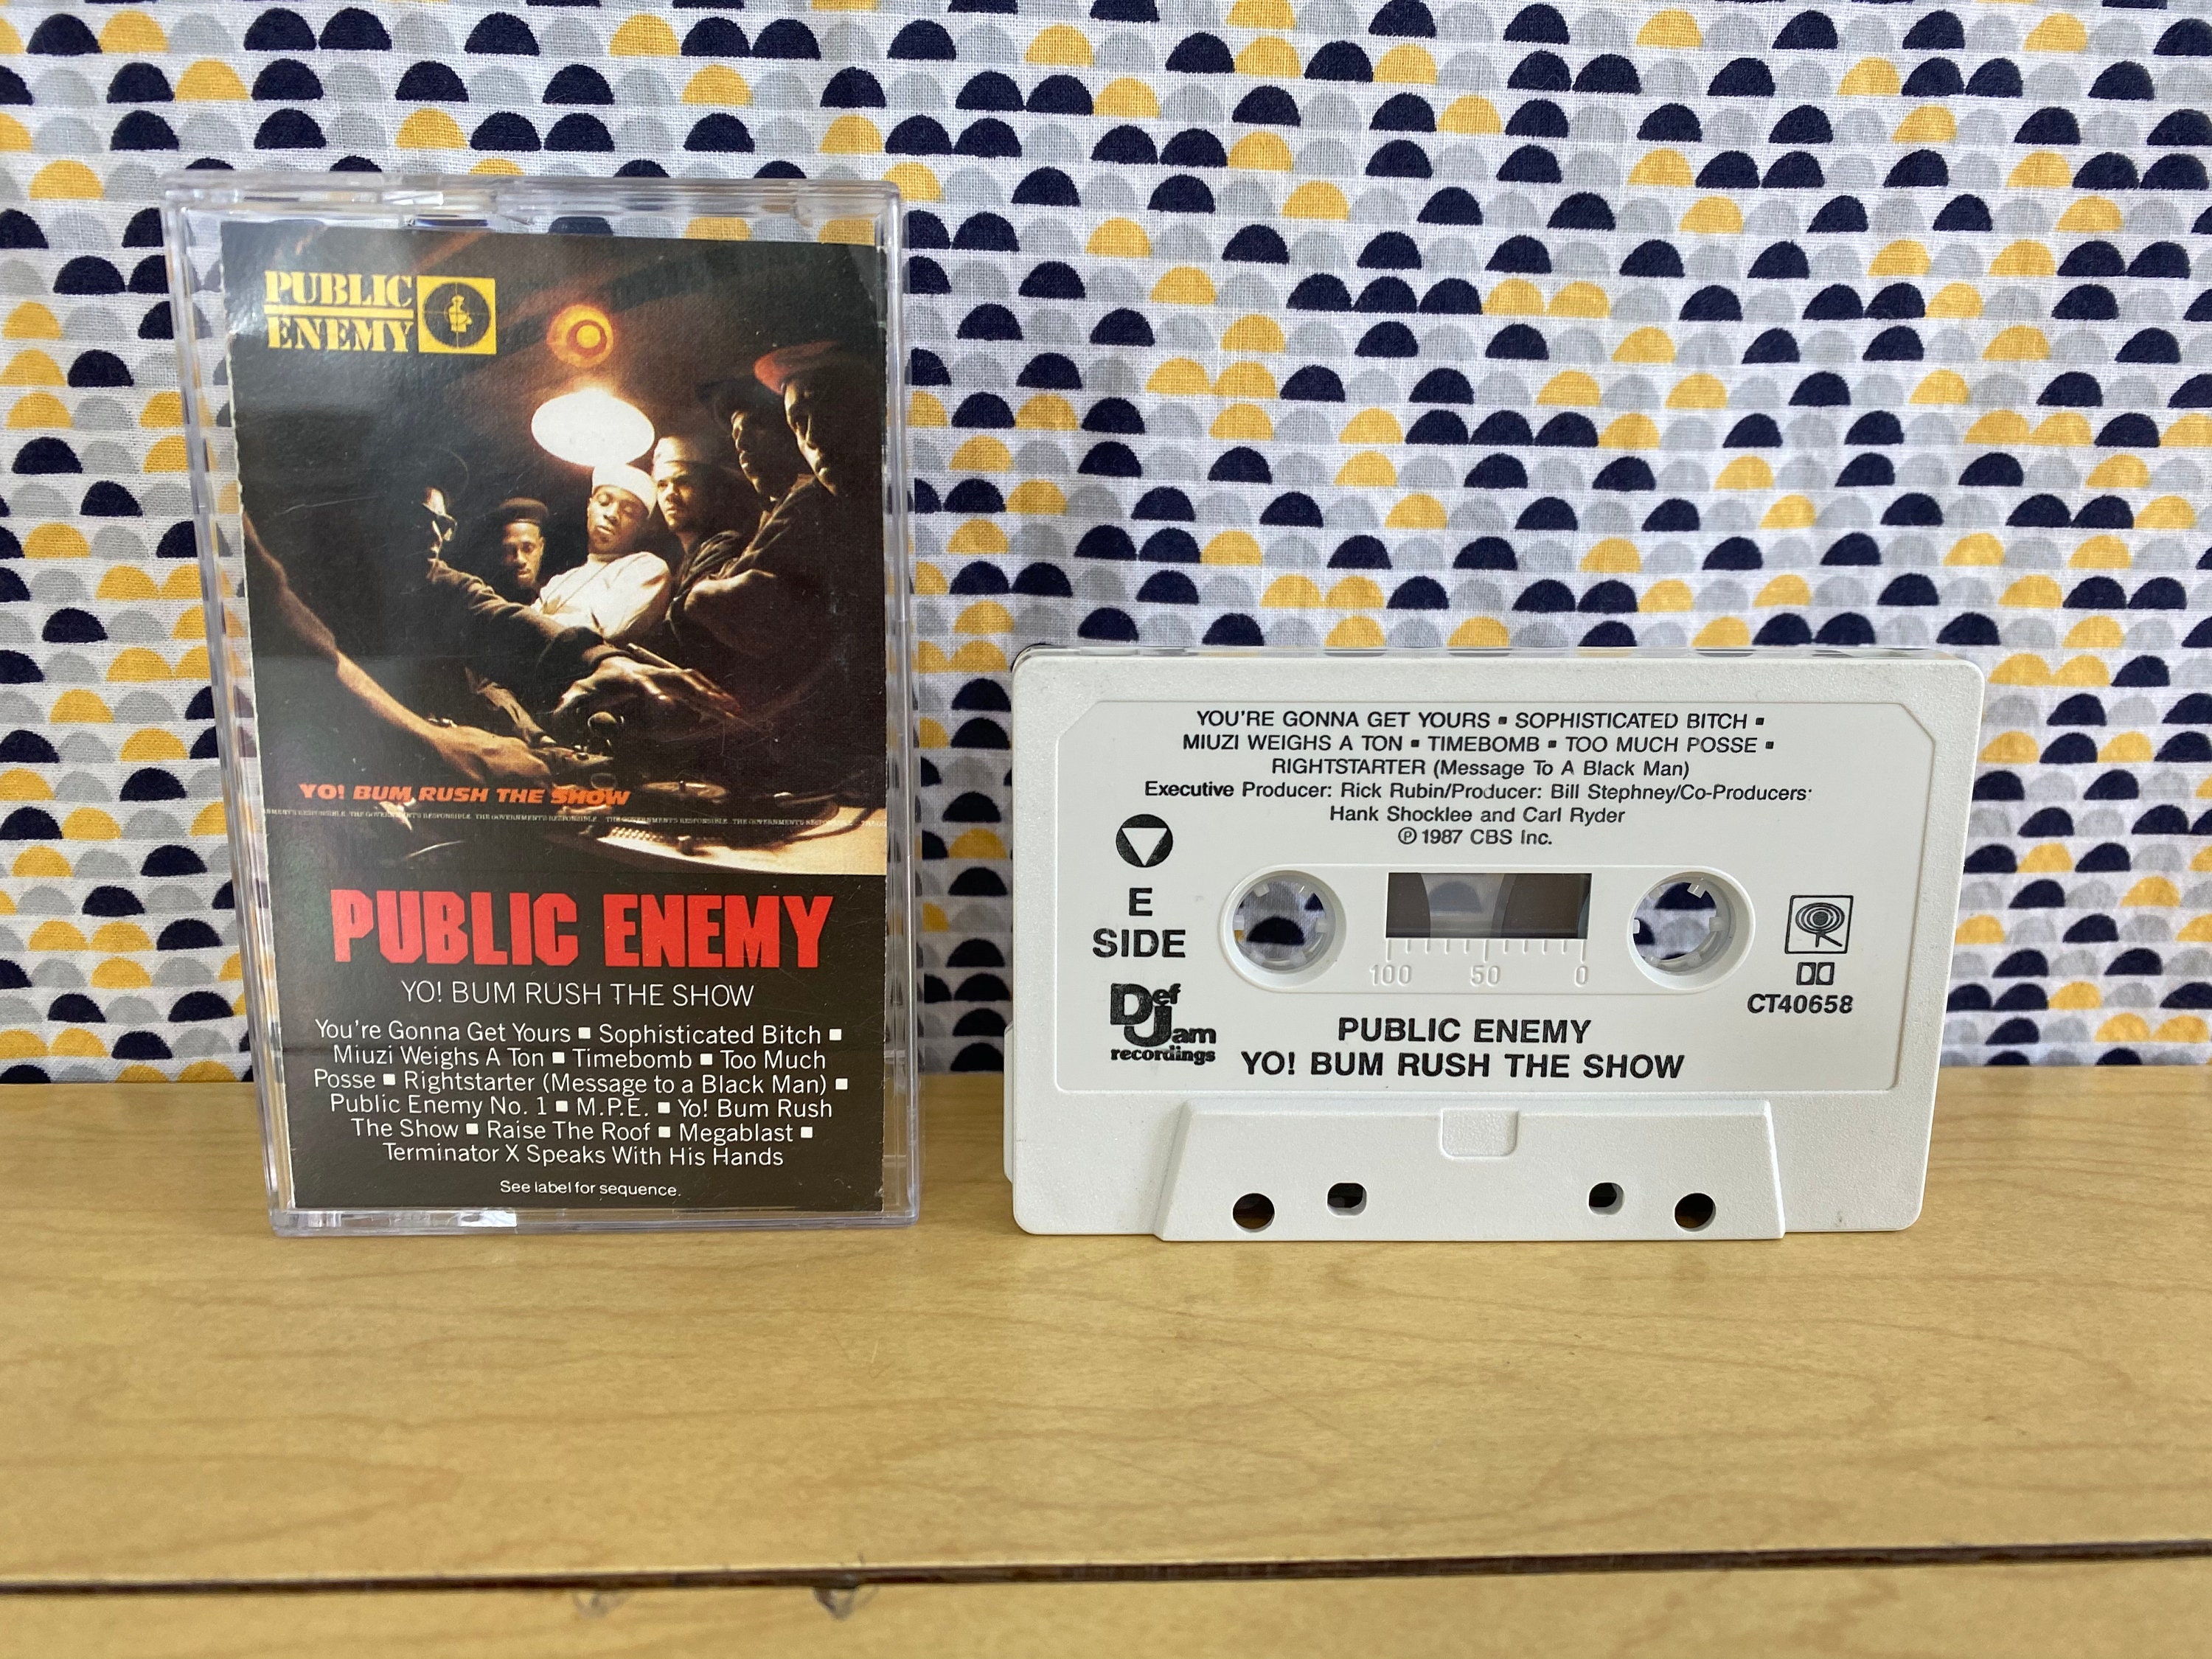 Public Enemy - Yo! Bum Rush The Show - Cassette tape - 1987 Def Jam Records